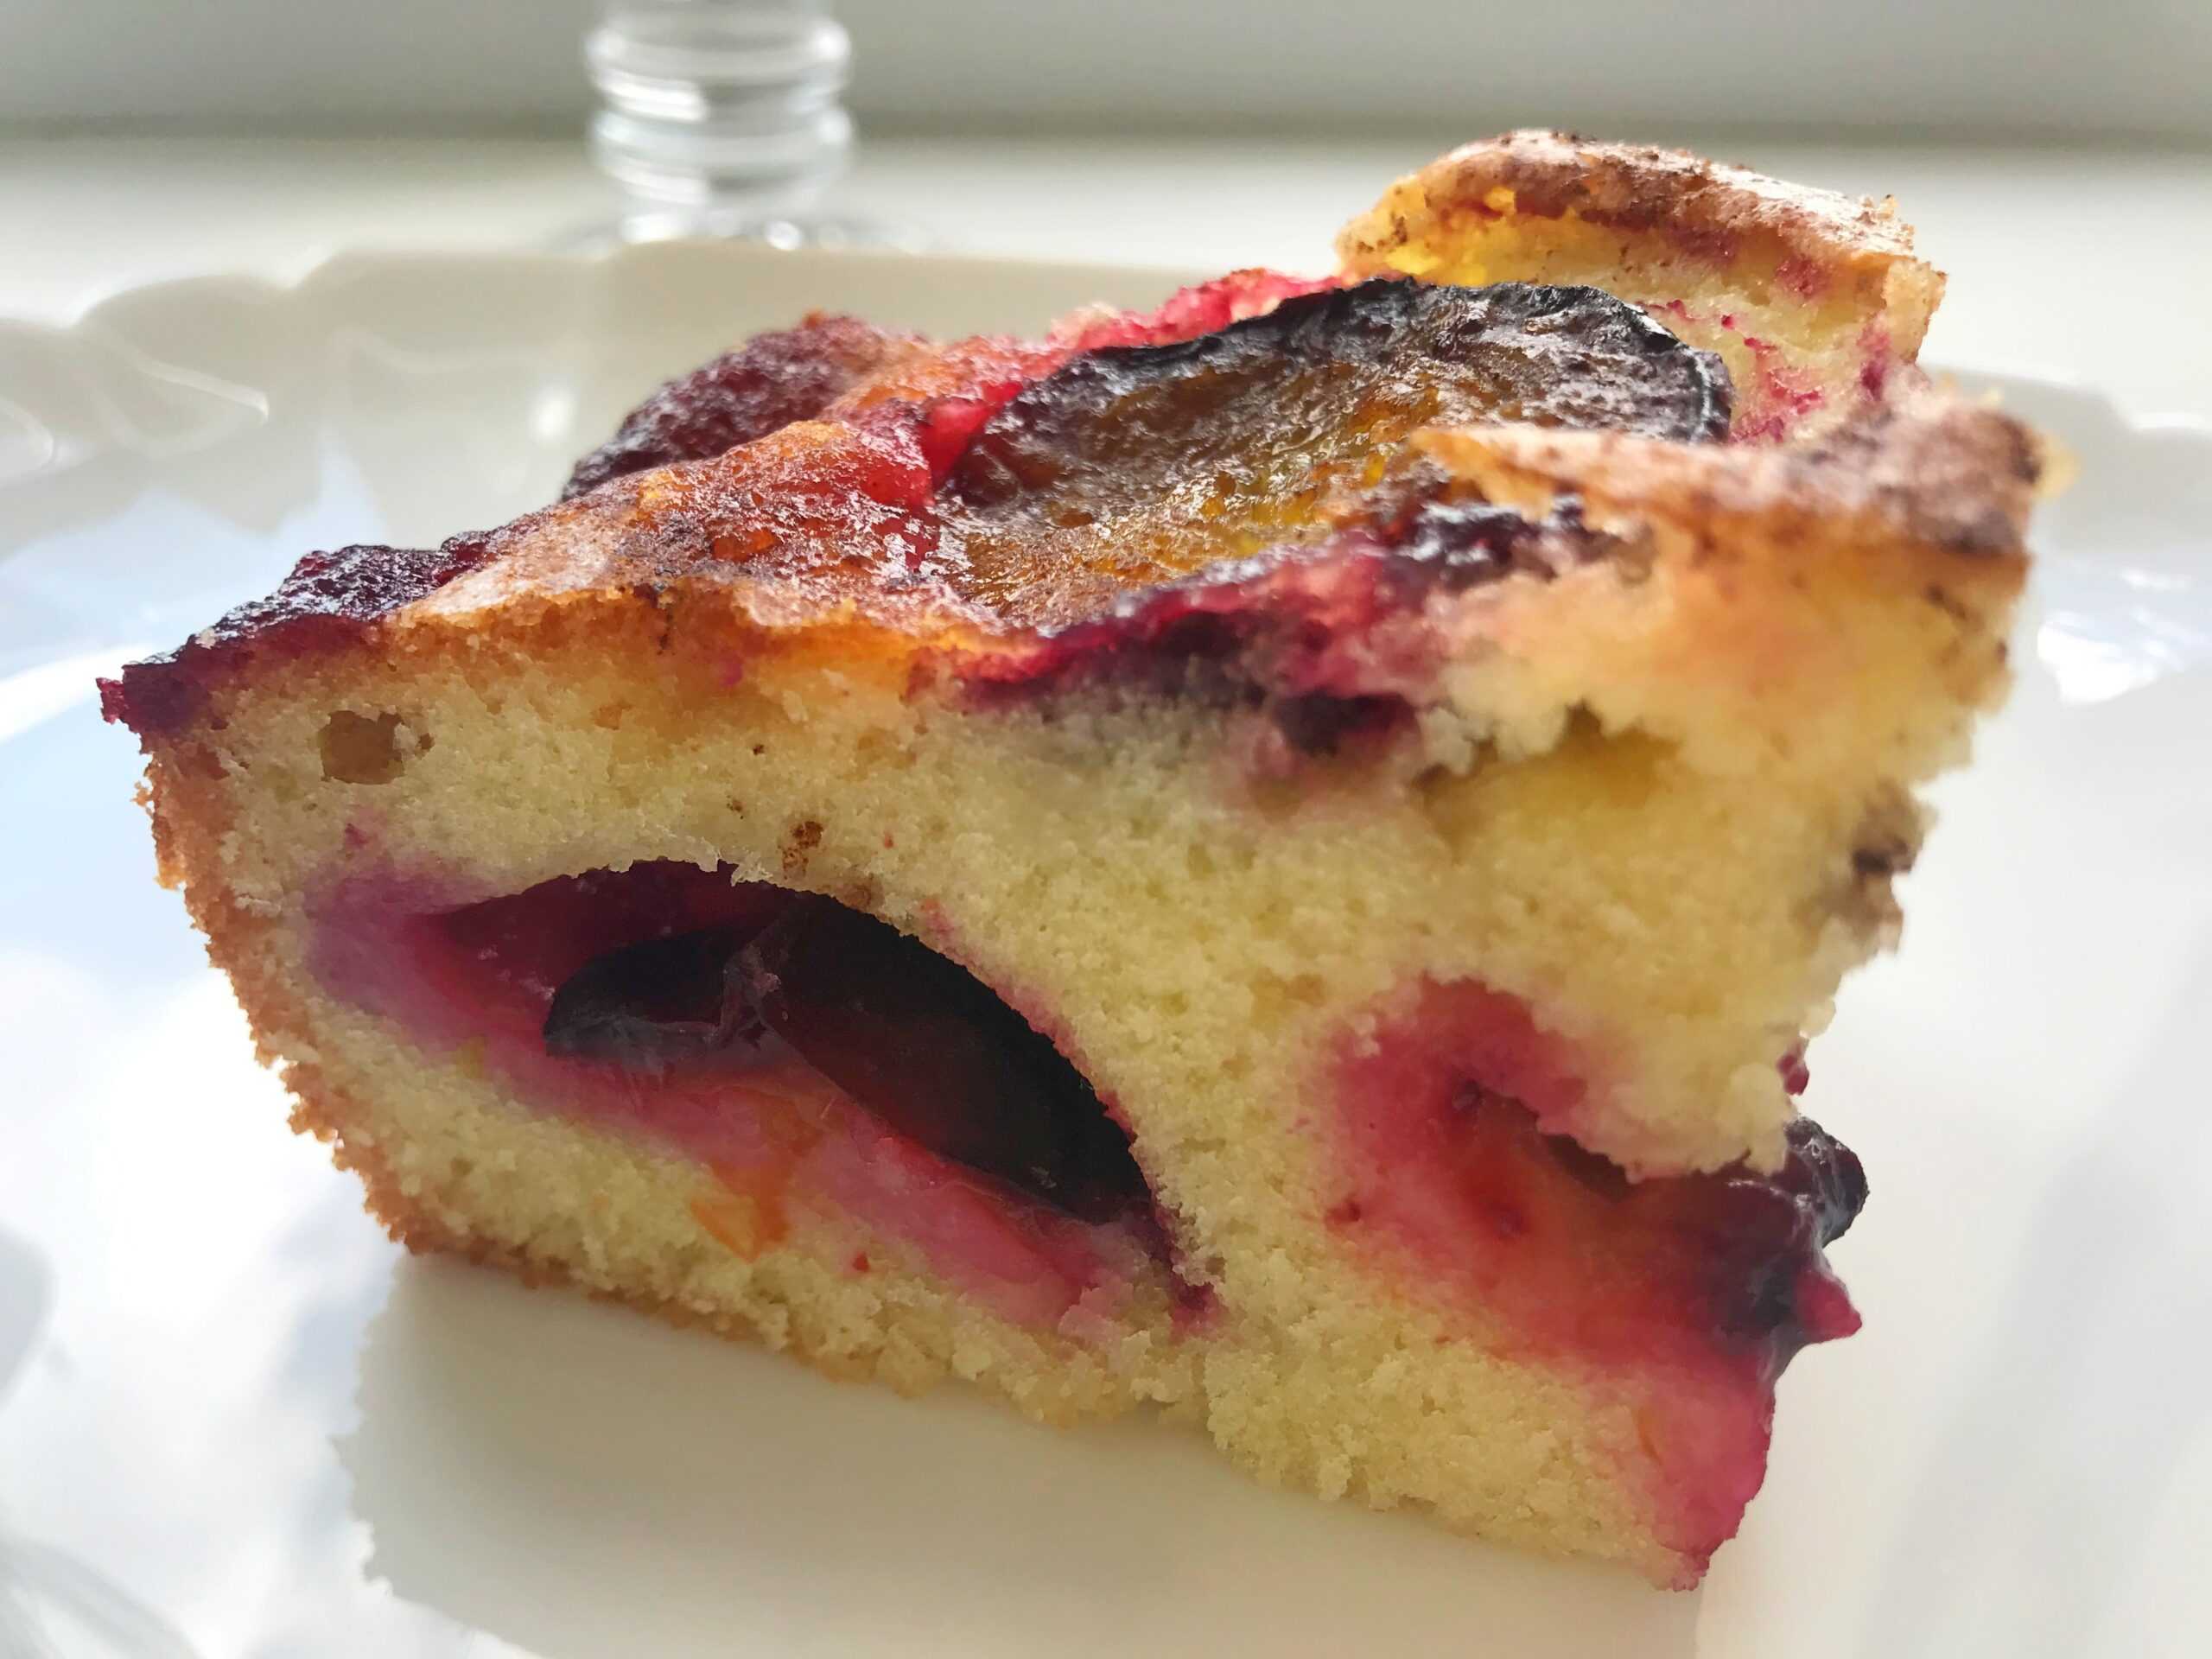 Пироги с ягодами. 15 рецептов с фото